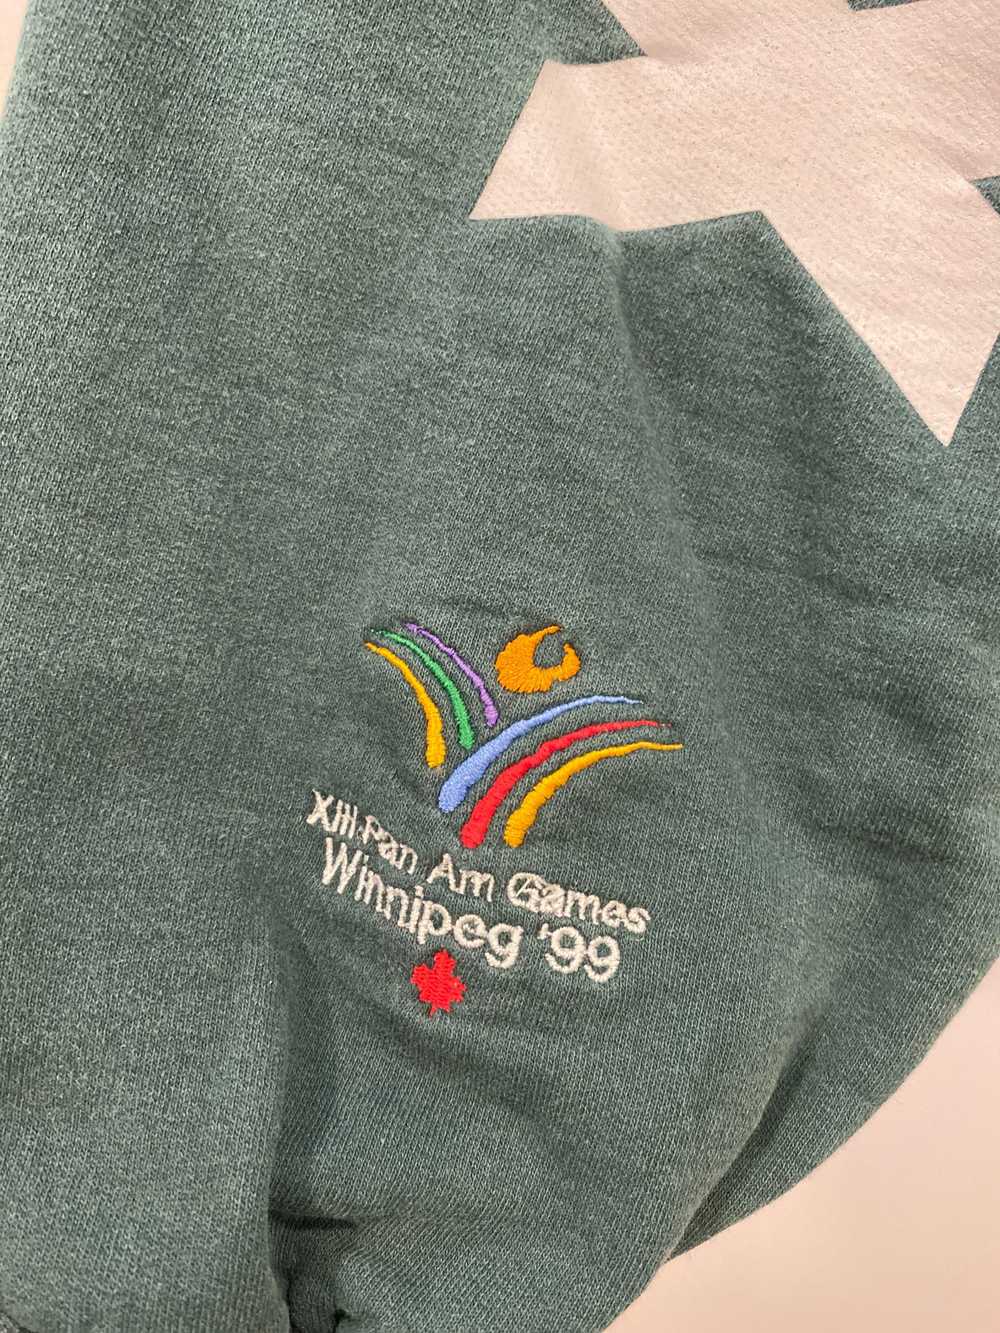 Pan Am Games Sweatshirt 1999 - image 5